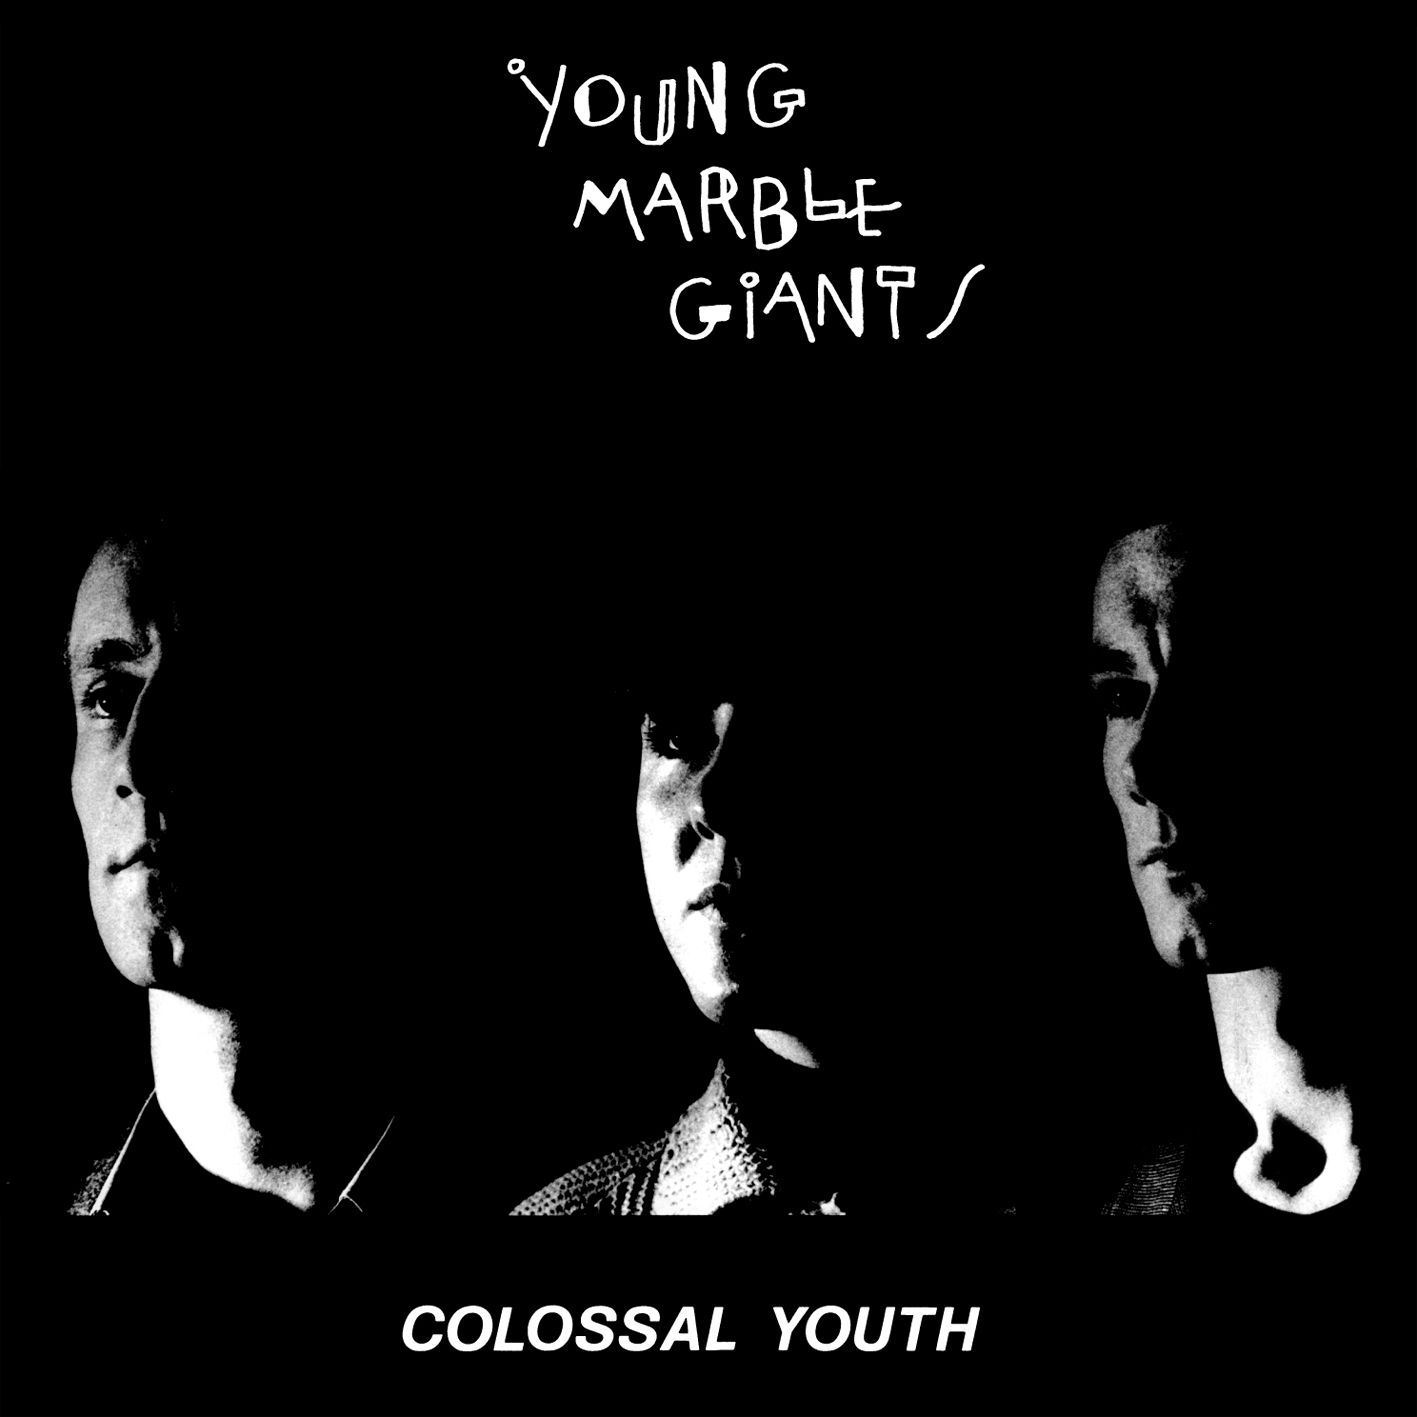 K・コバーン/ソニック・ユースにも影響を与えたヤング・マーブル・ジャイアンツ、『Colossal Youth』が国内盤2枚組CDで発売決定